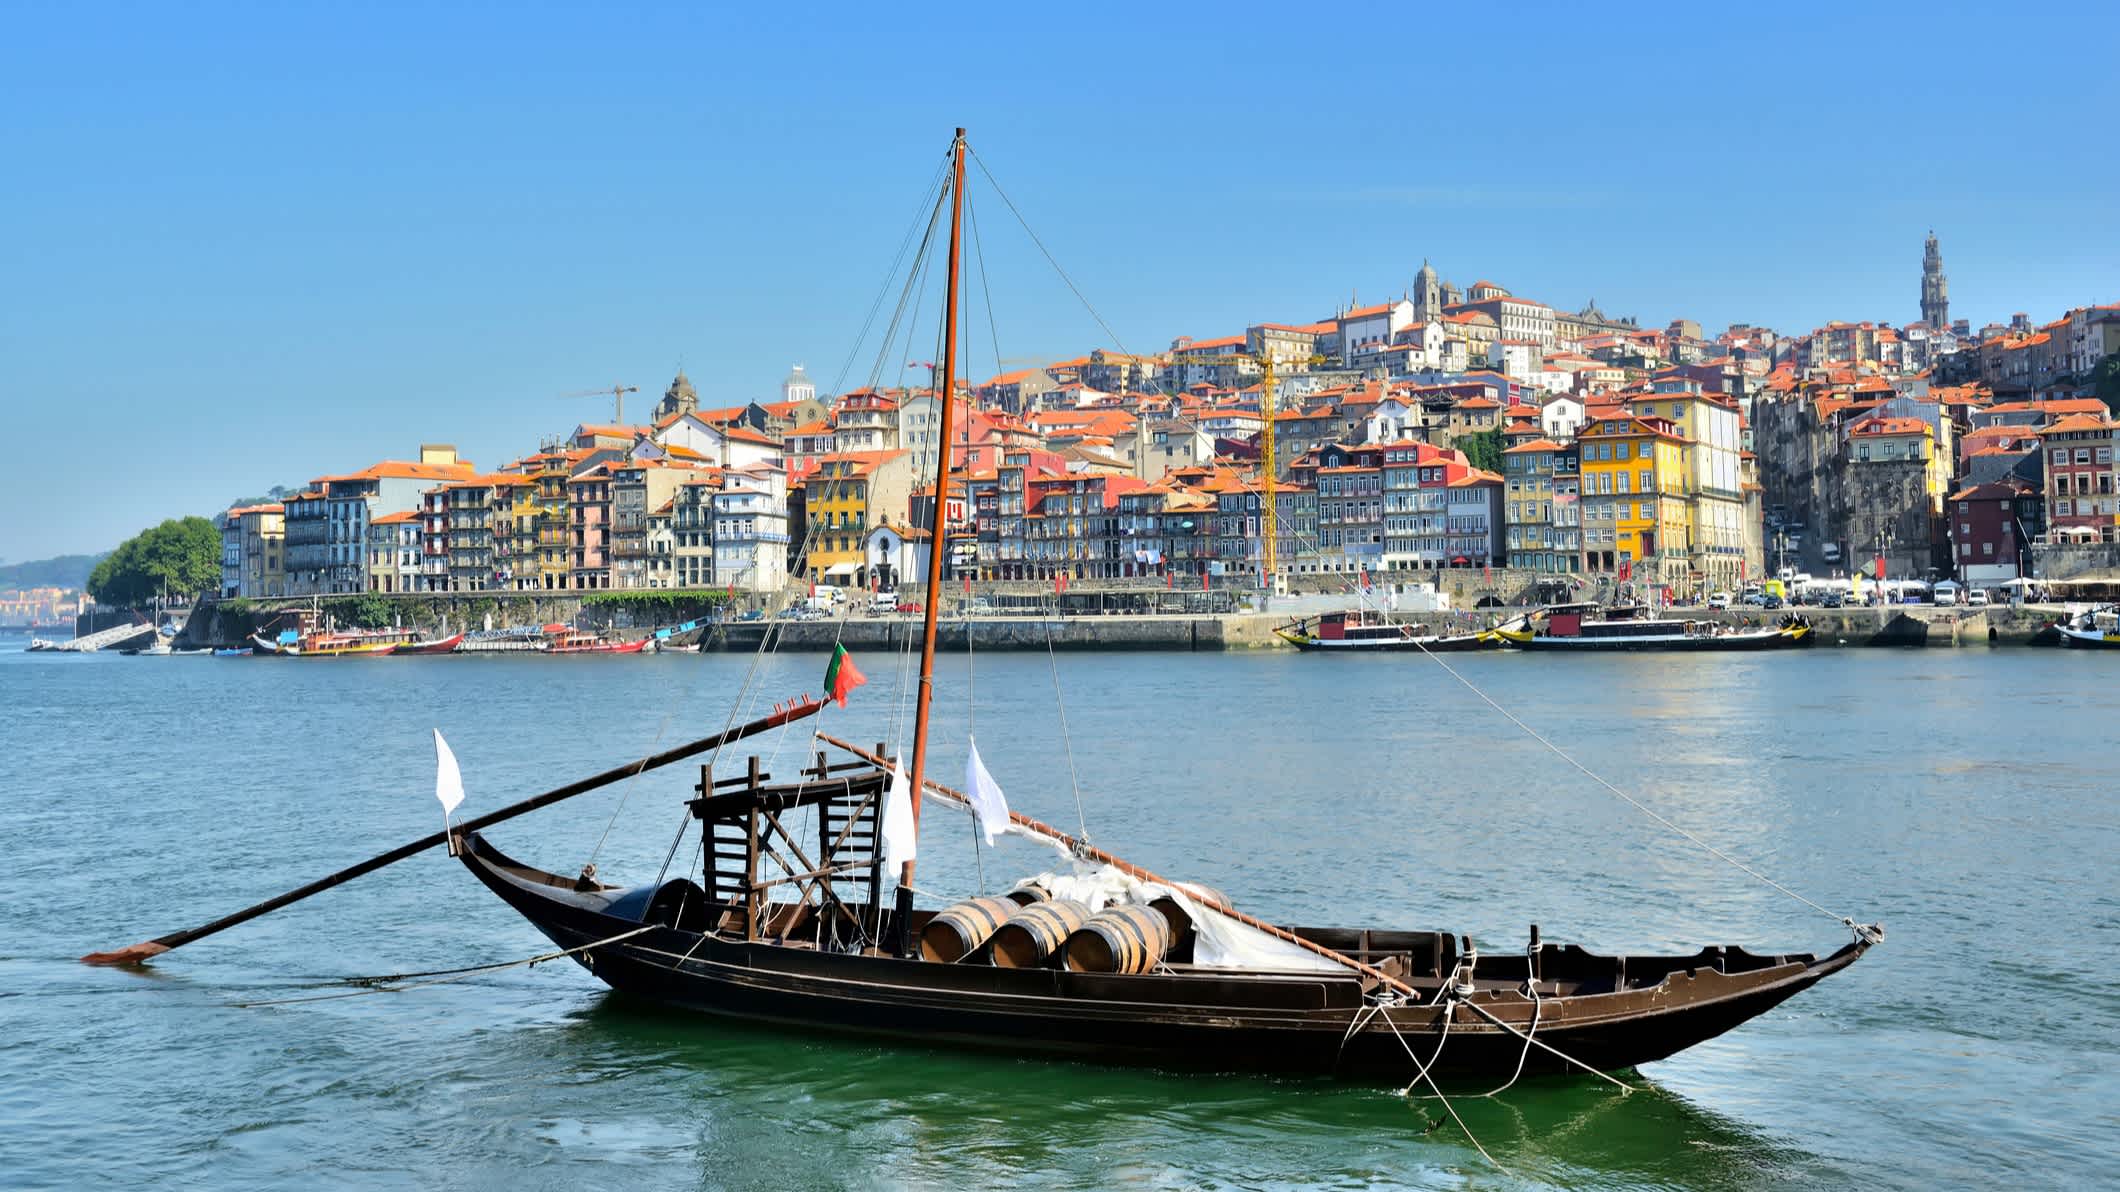 Porto au centre-ville avec le fleuve Douro et un bateau traditionnel, Portugal

